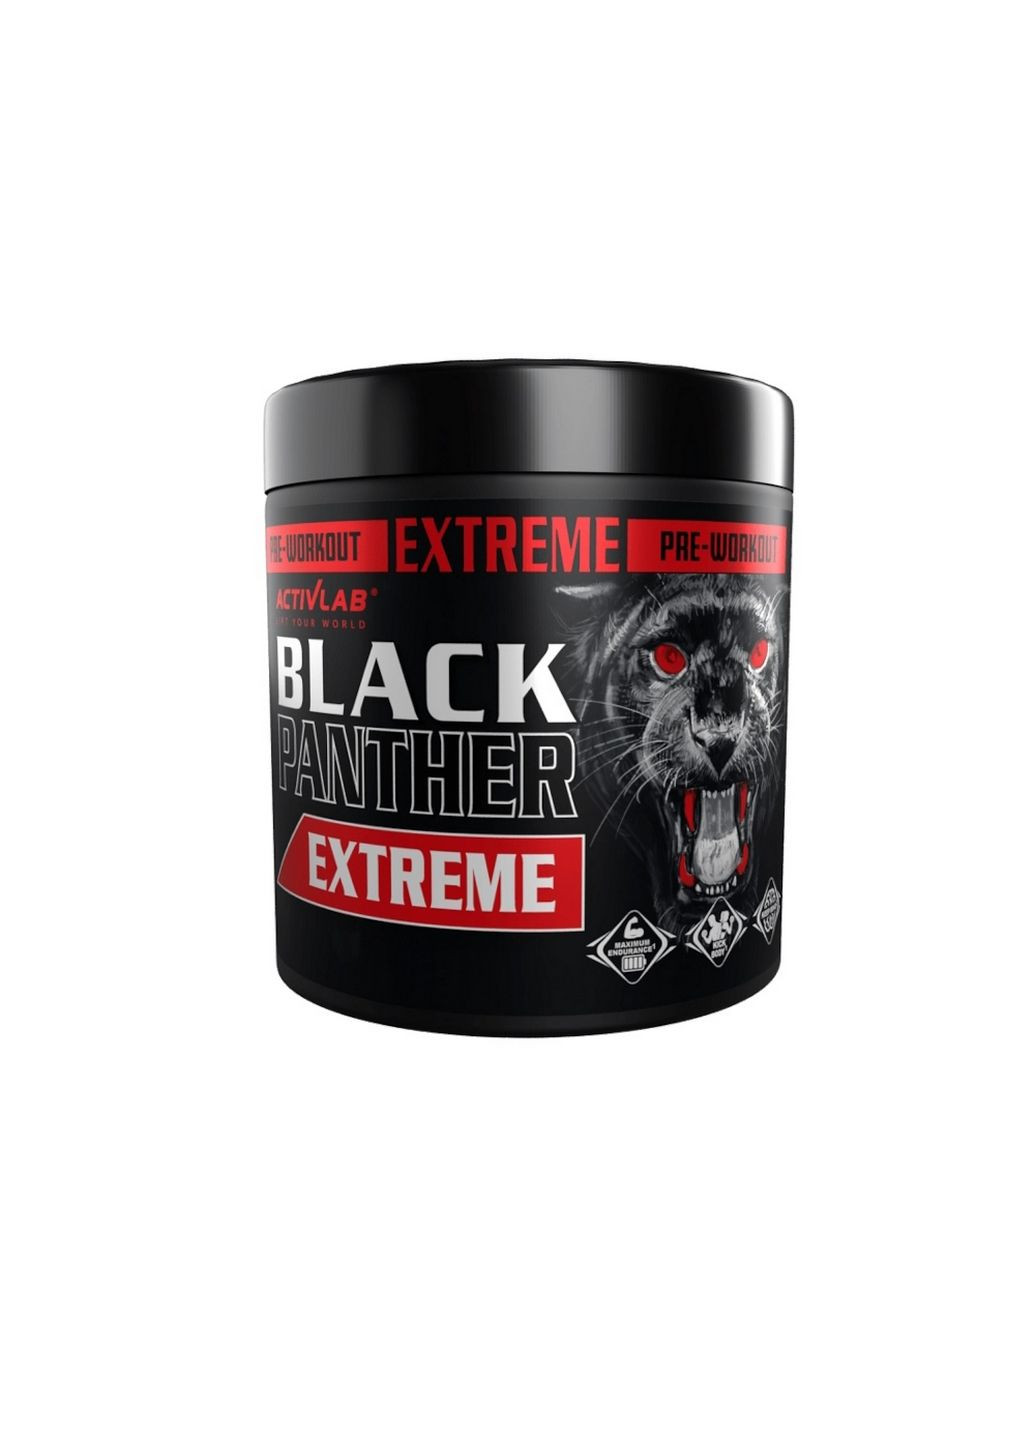 Предтренировочный комплекс Black Panther Extreme, 300 грамм Черная смородина ActivLab (293483258)